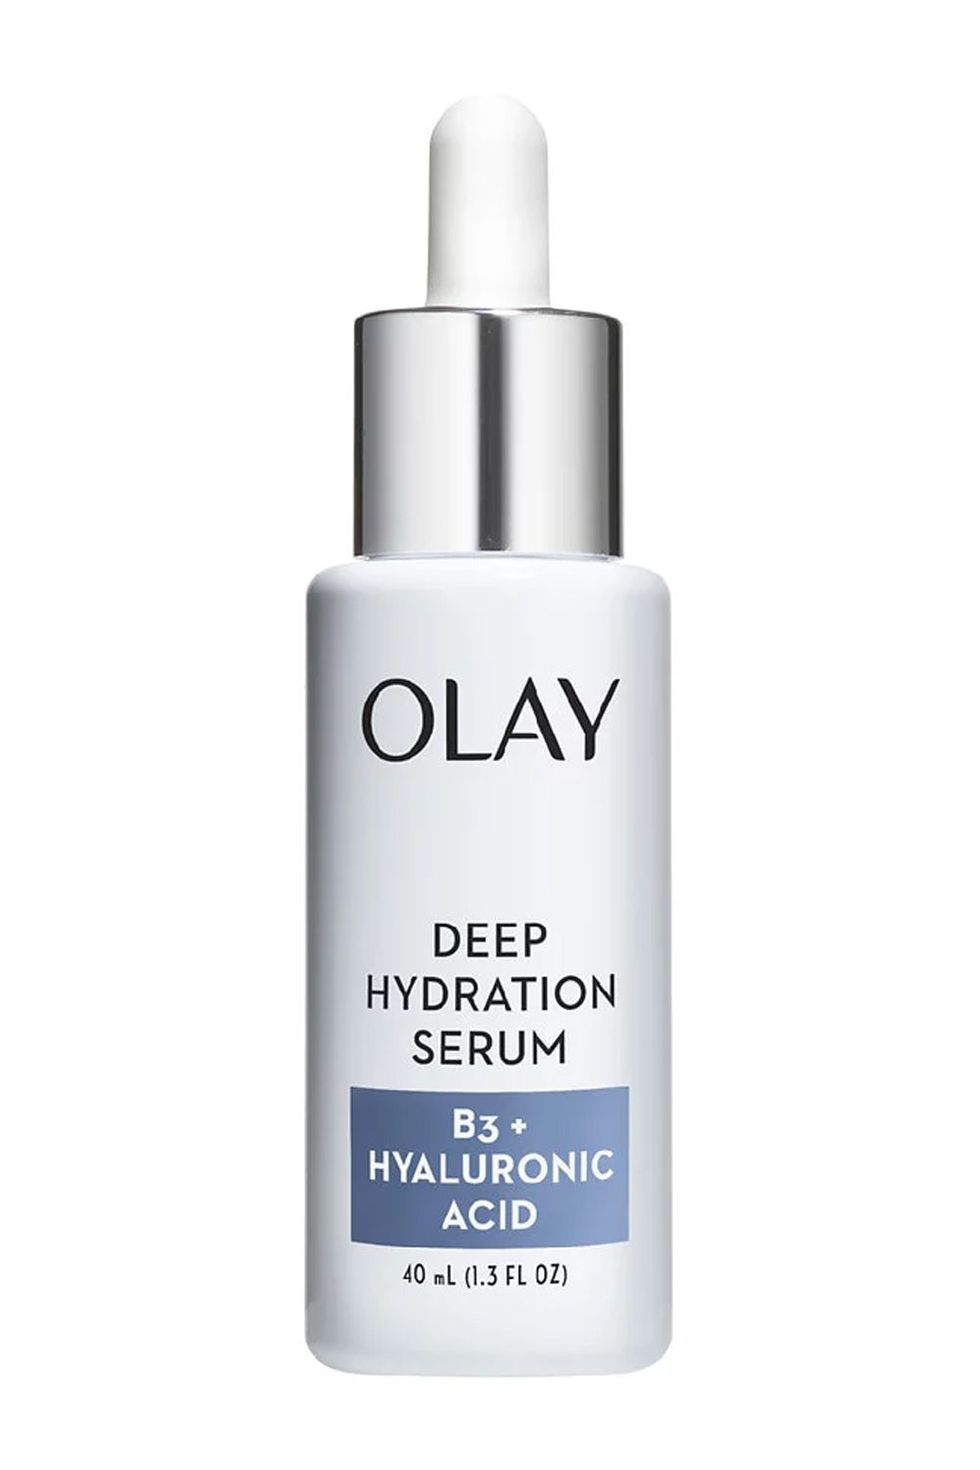 Olay Deep Hydration Serum B3+ Hyaluronic Acid